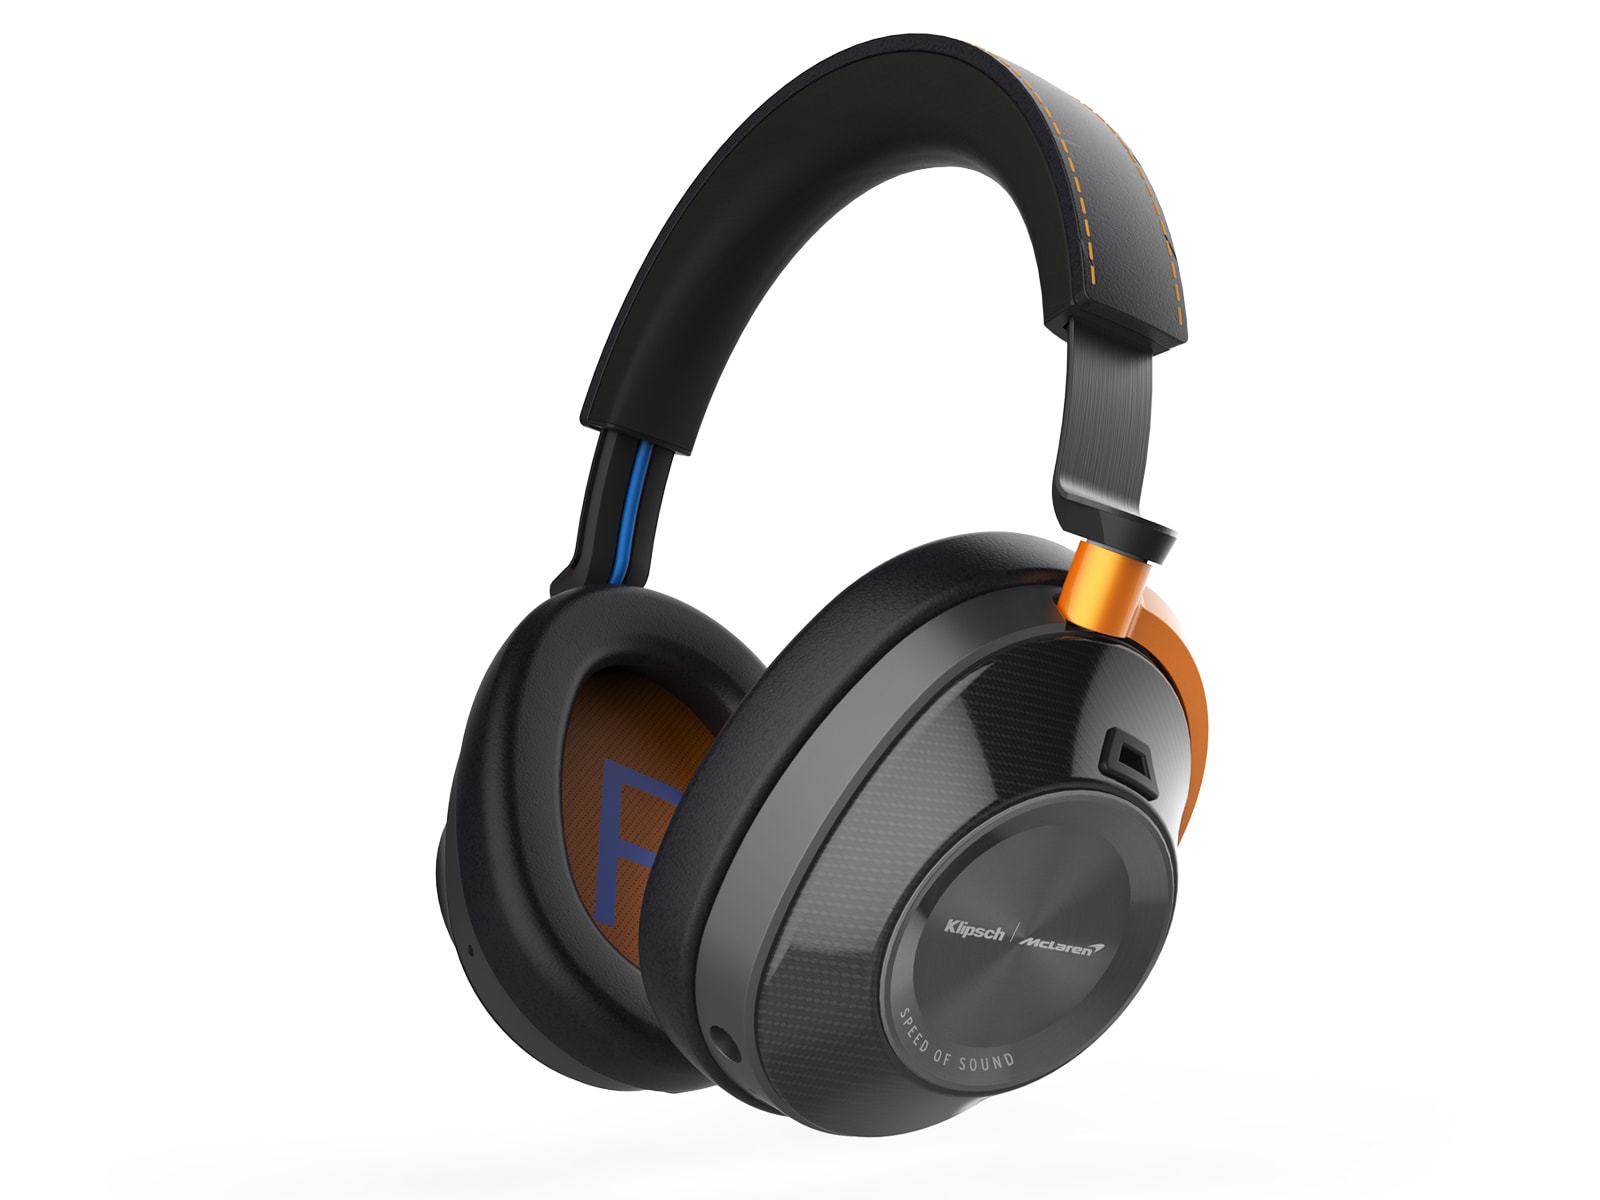 Klipsch McLaren noise-cancelling headphones